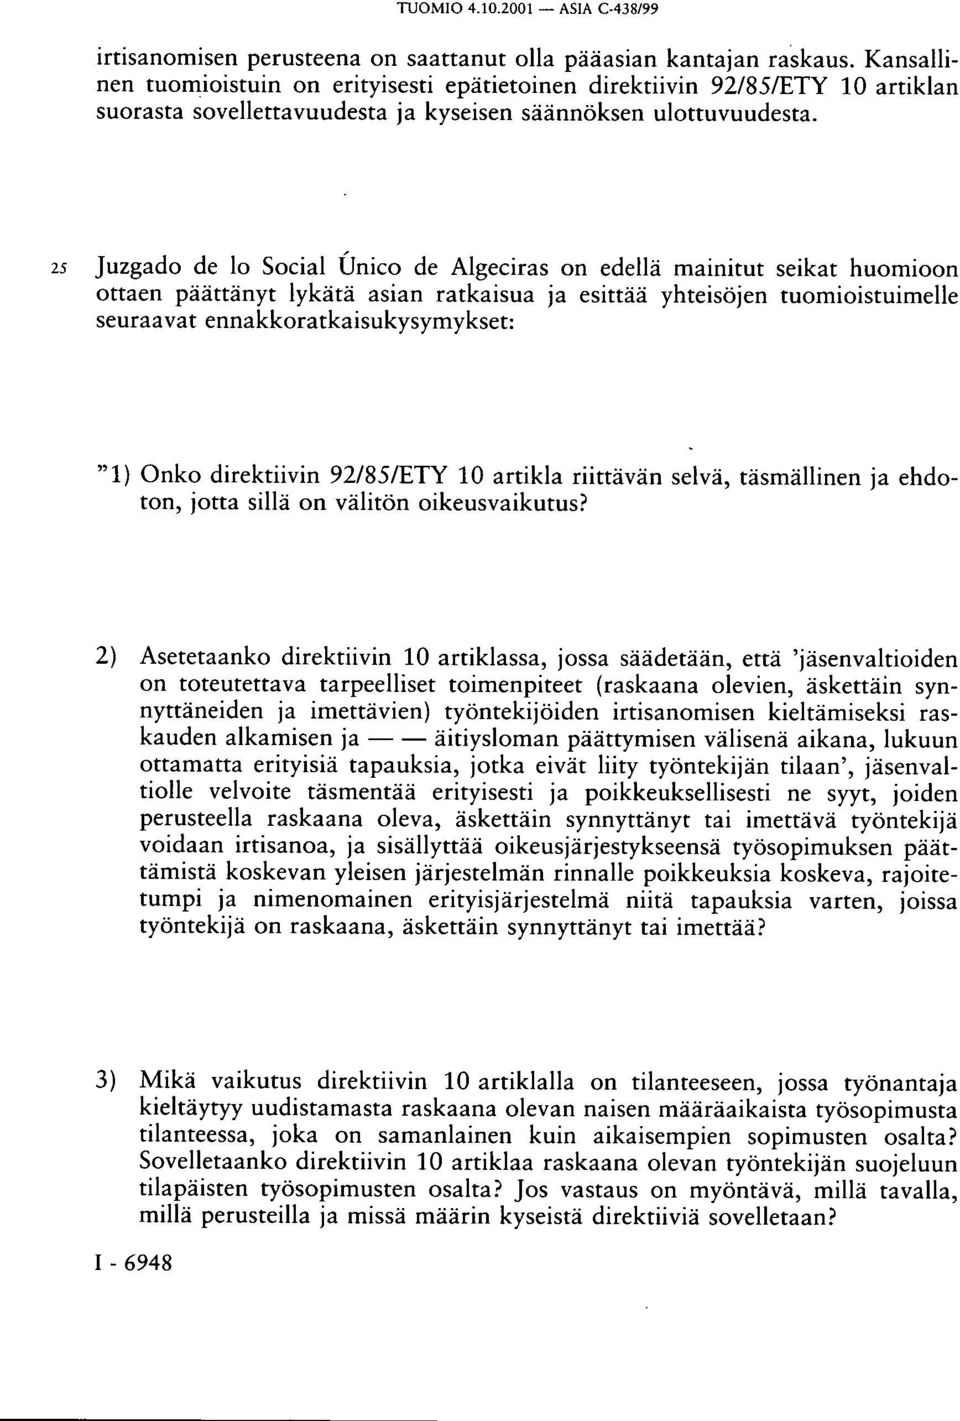 25 Juzgado de lo Social Único de Algeciras on edellä mainitut seikat huomioon ottaen päättänyt lykätä asian ratkaisua ja esittää yhteisöjen tuomioistuimelle seuraavat ennakkoratkaisukysymykset: "1)